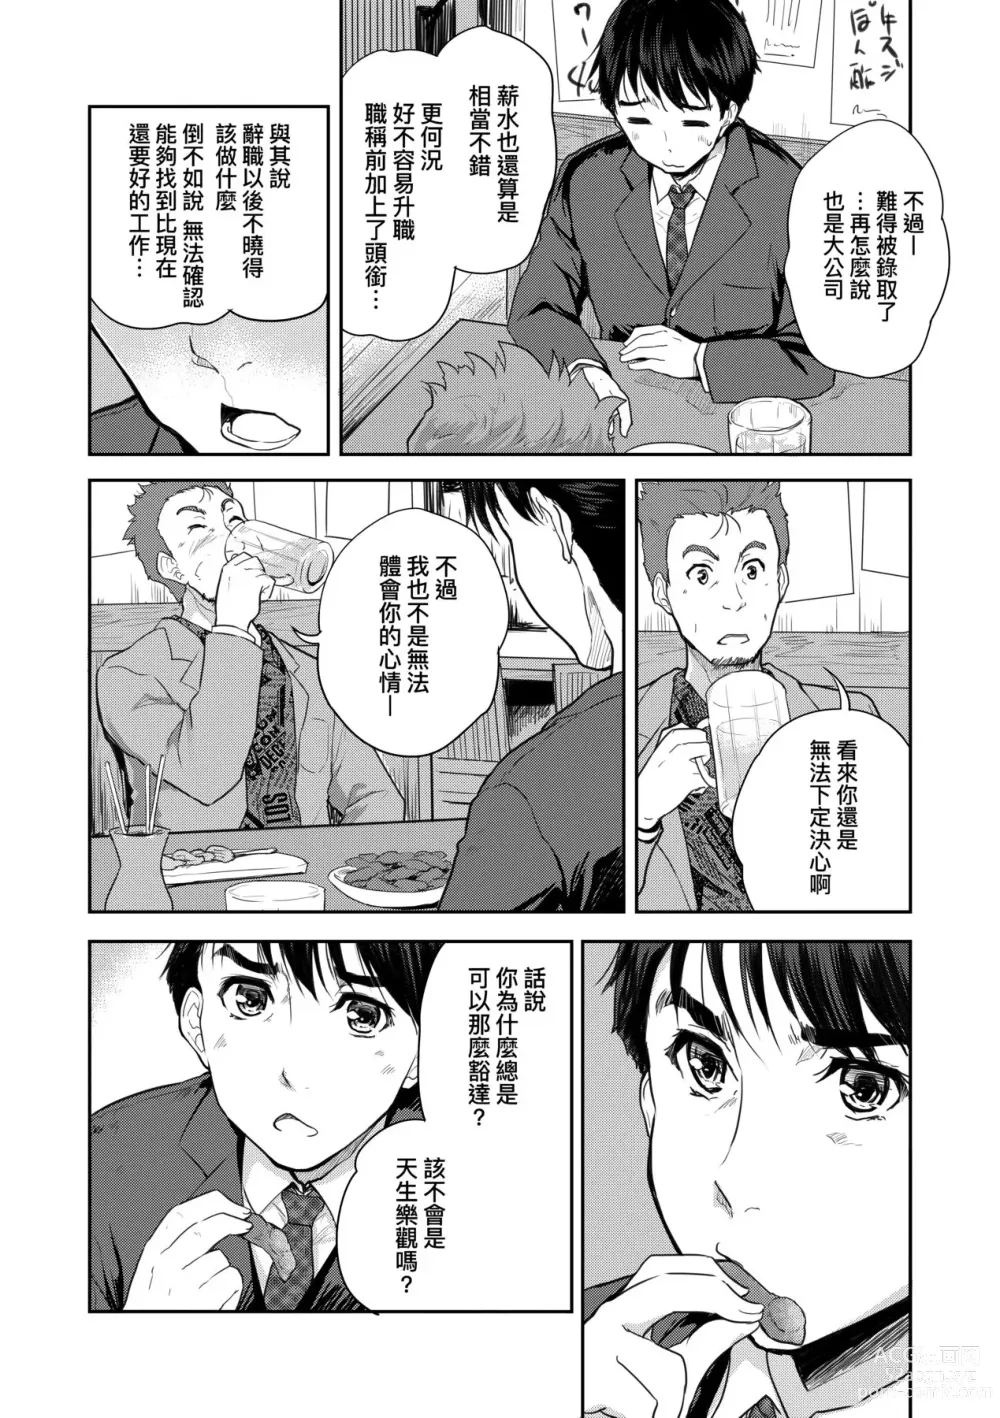 Page 13 of manga 把玩妳綿軟歐派並含入口中品嘗 (decensored)